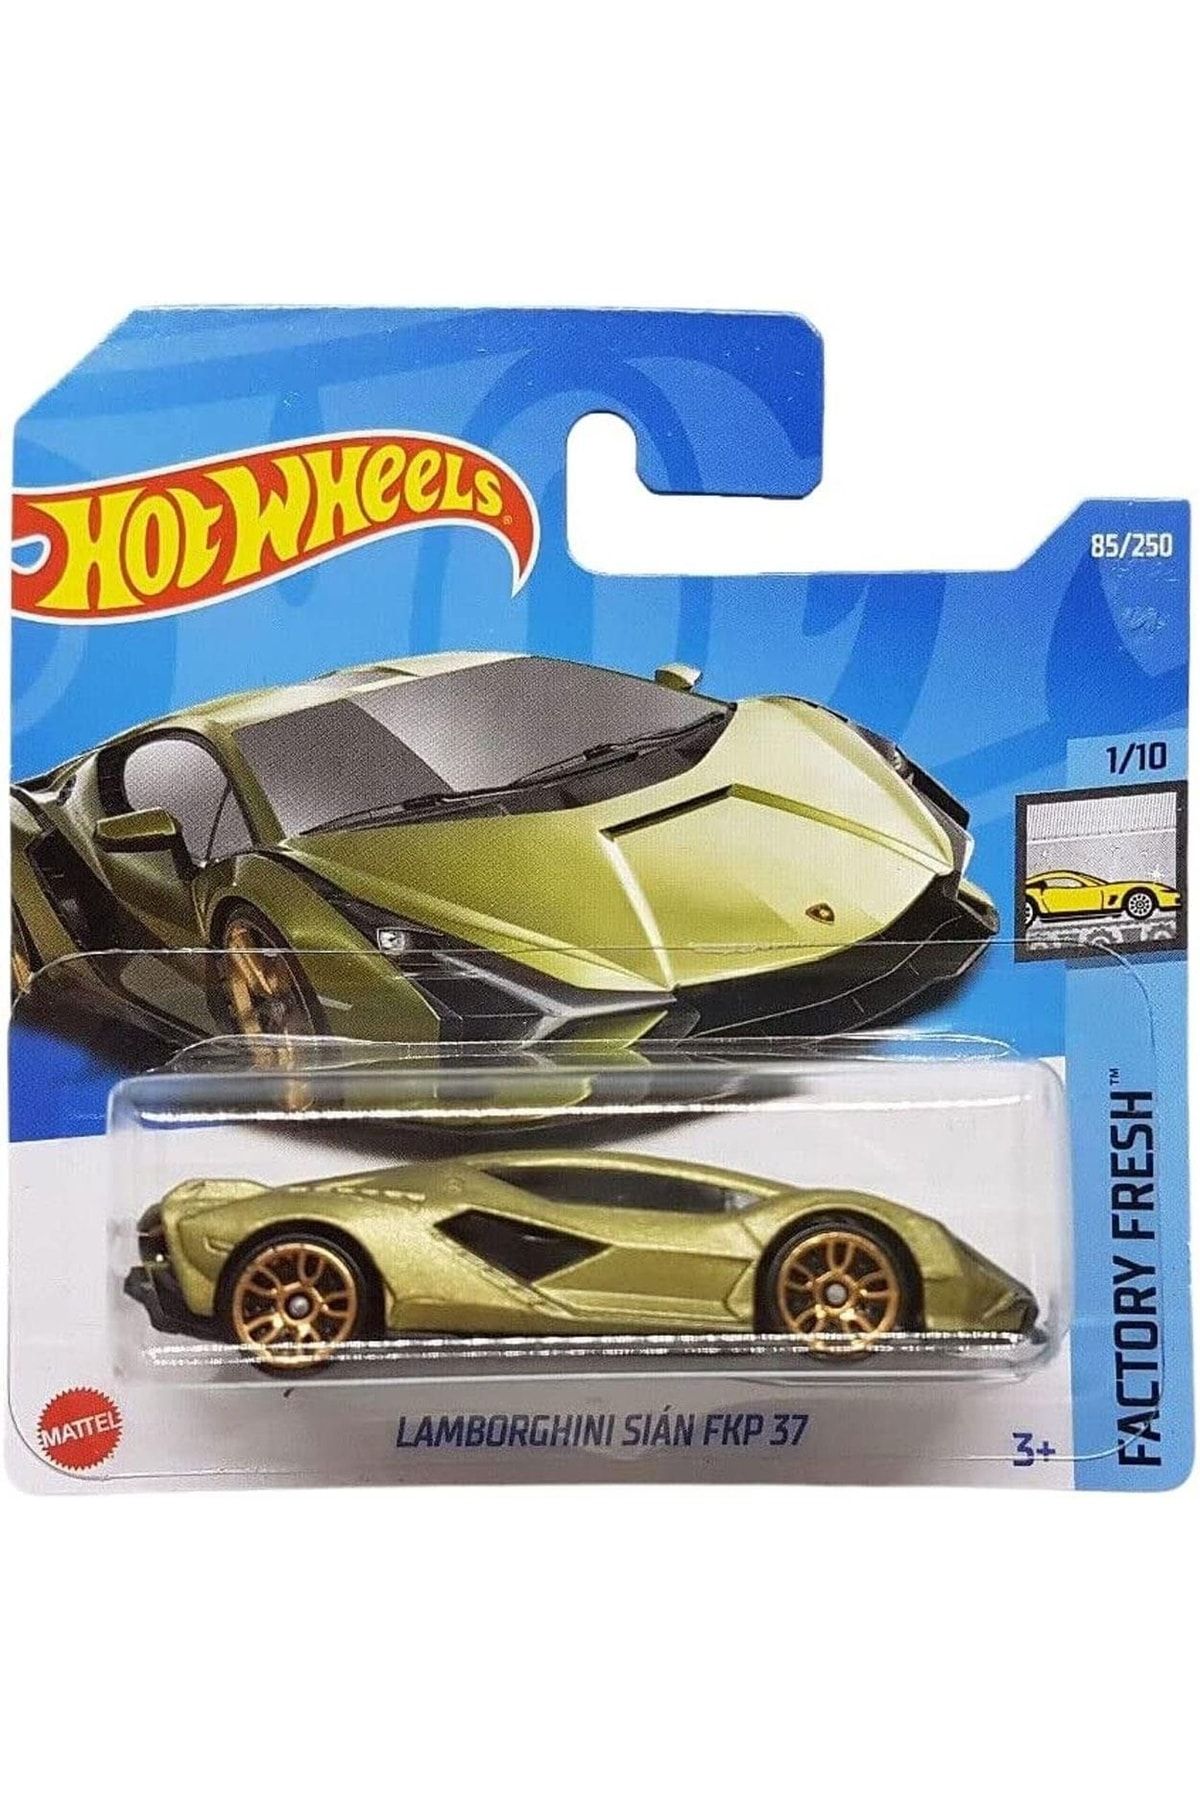 HOT WHEELS Lamborghini Sian Fkp 37 Hot Wheels Tekli Arabalar 1/64 Ölçek Metal Oyuncak Araba